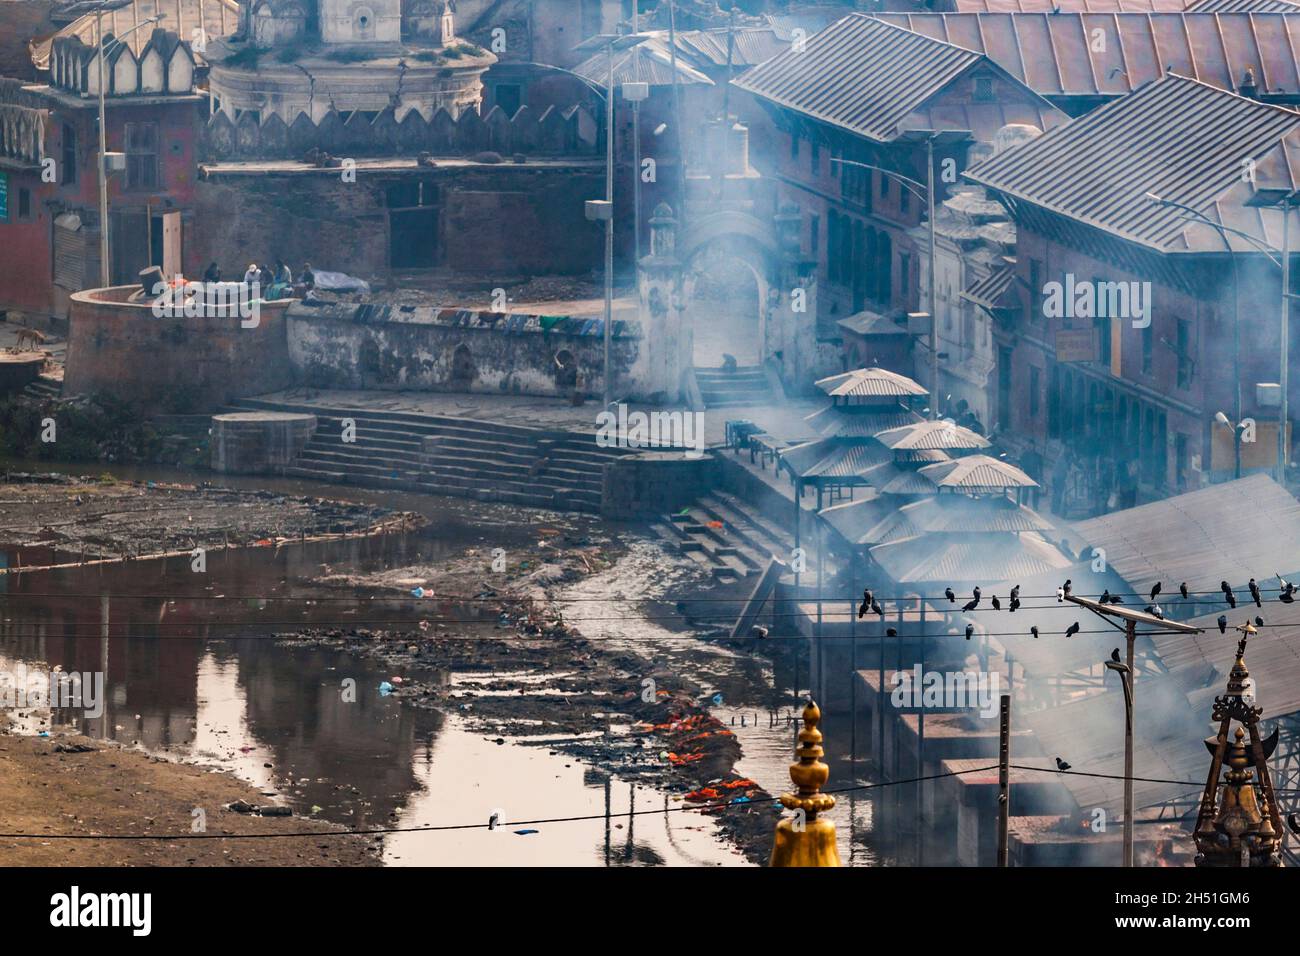 Pashupatinath Komplex, Einäscherung der Toten am Ufer des heiligen Flusses Bagmati, teilweise während des Erdbebens 2015 zerstört. Rauch, weil o Stockfoto